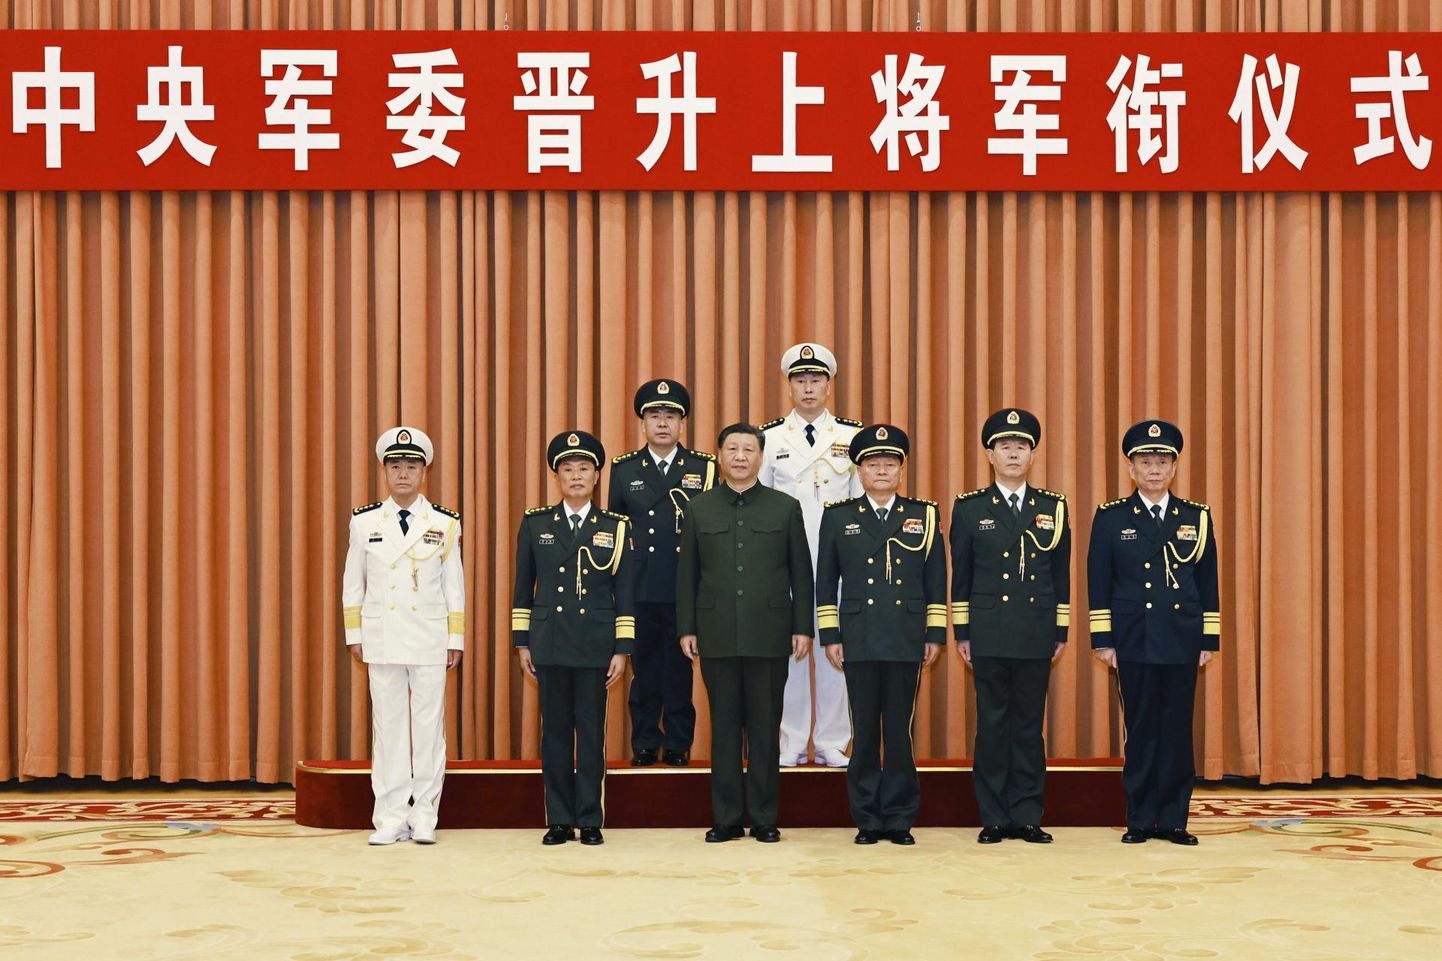 Hiina riigipea Xi Jinping sõjaväejuhtidega möödunud aasta 25. detsembril.